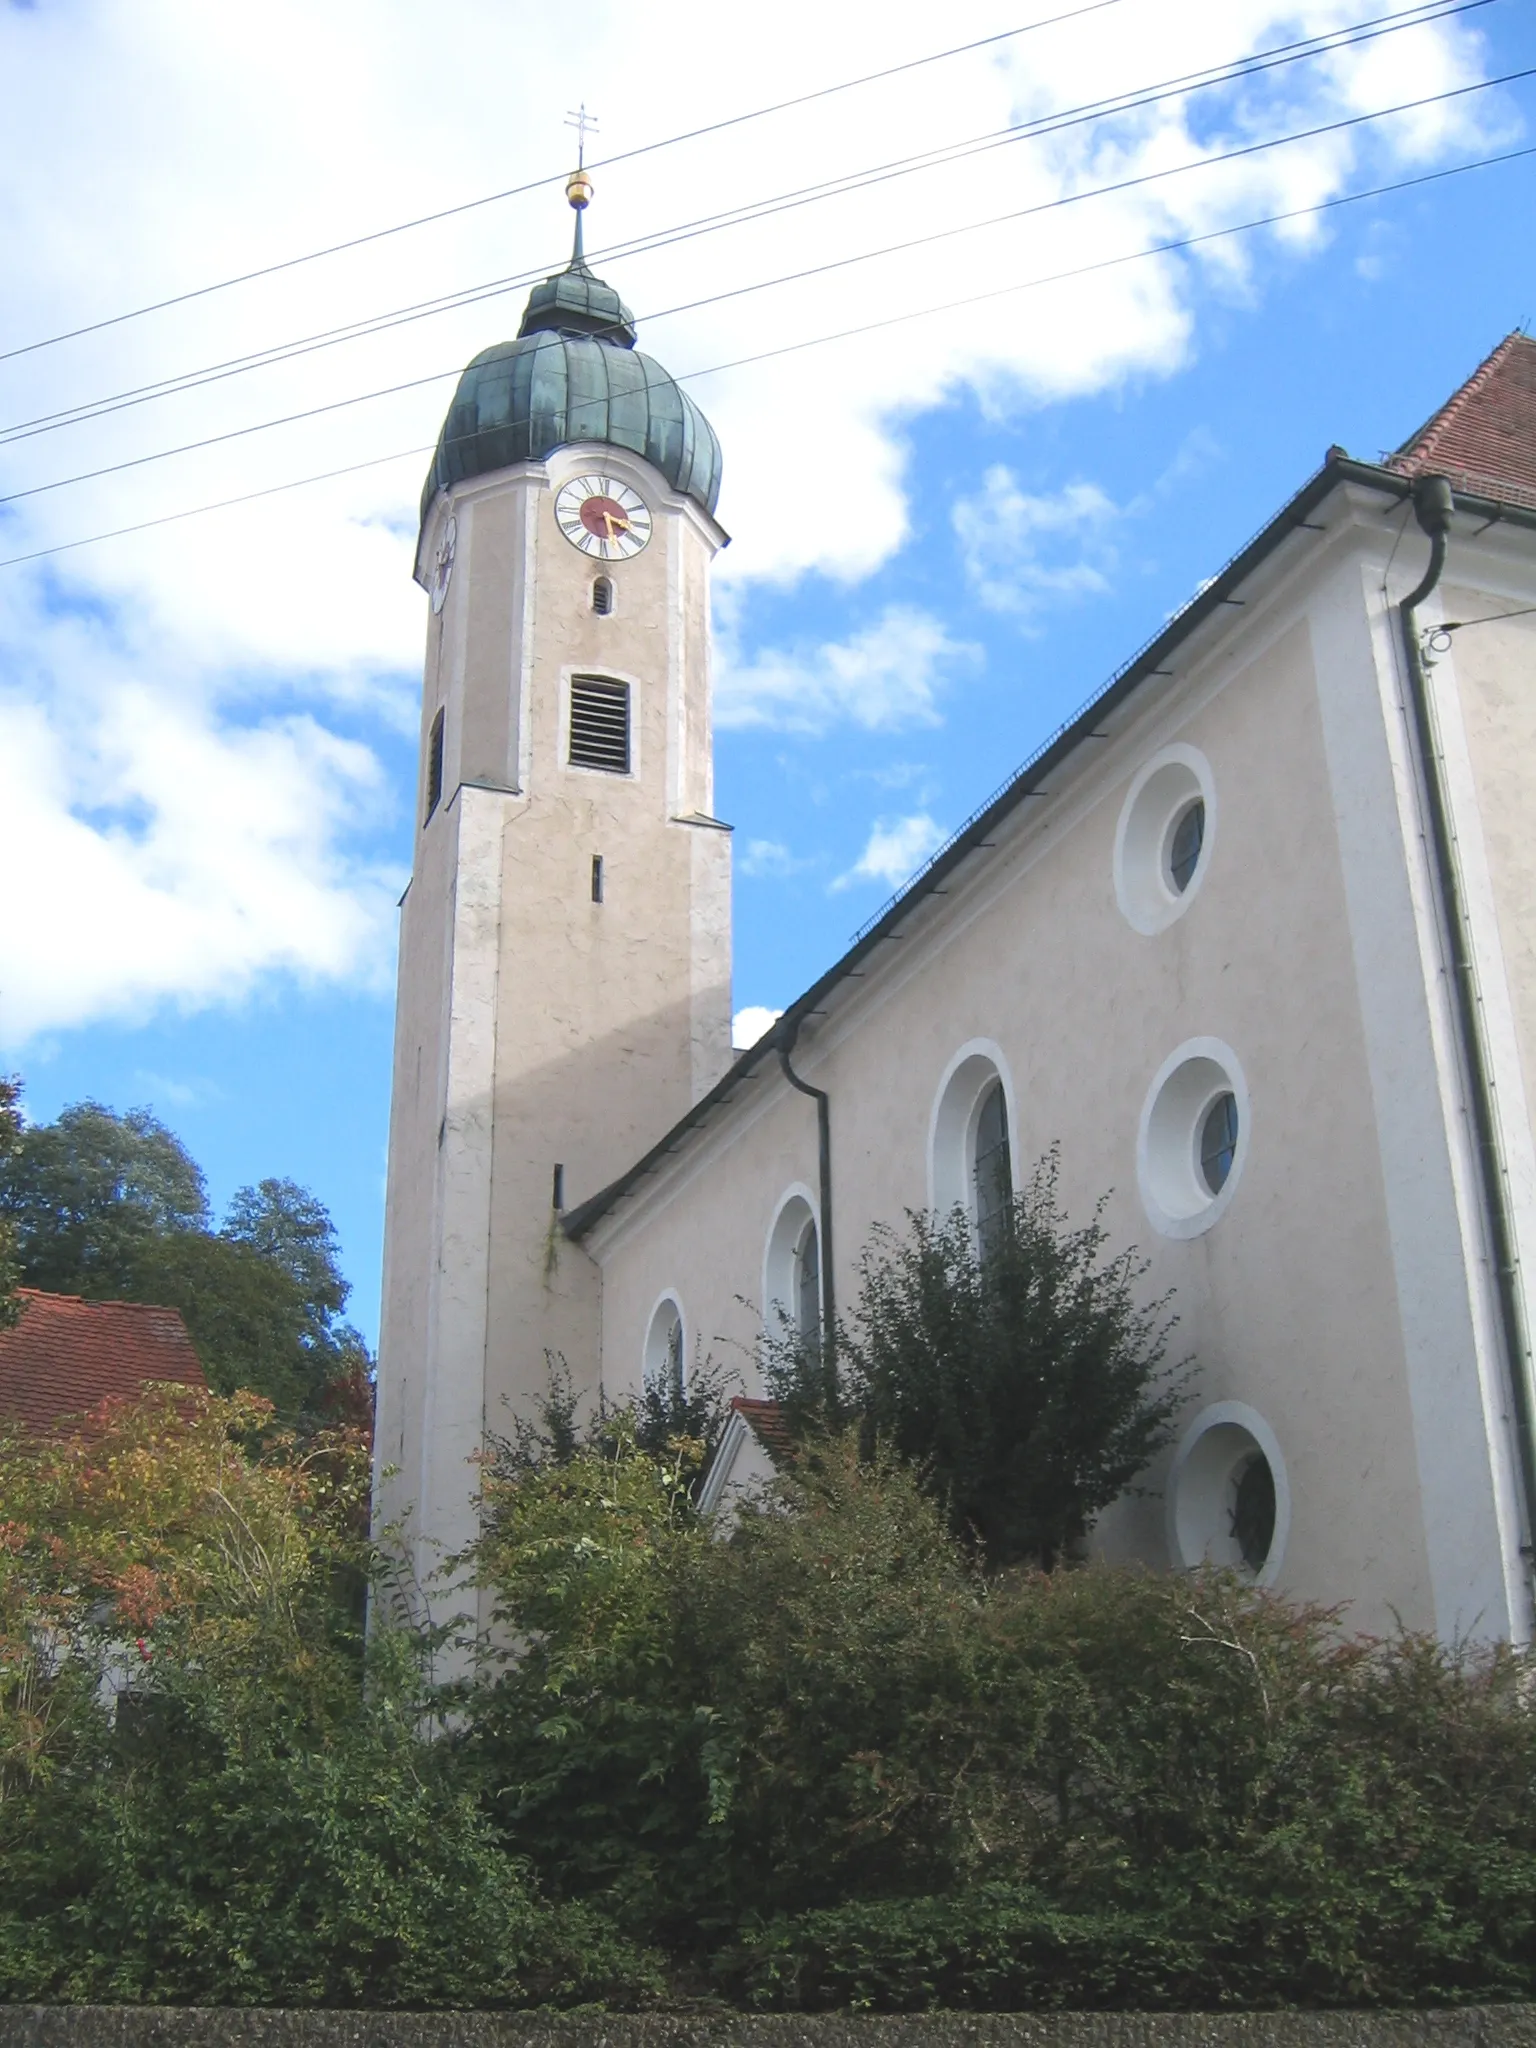 Photo showing: Parish church (Saint Valentin) in the village of Markt Buch in Bavaria, Germany